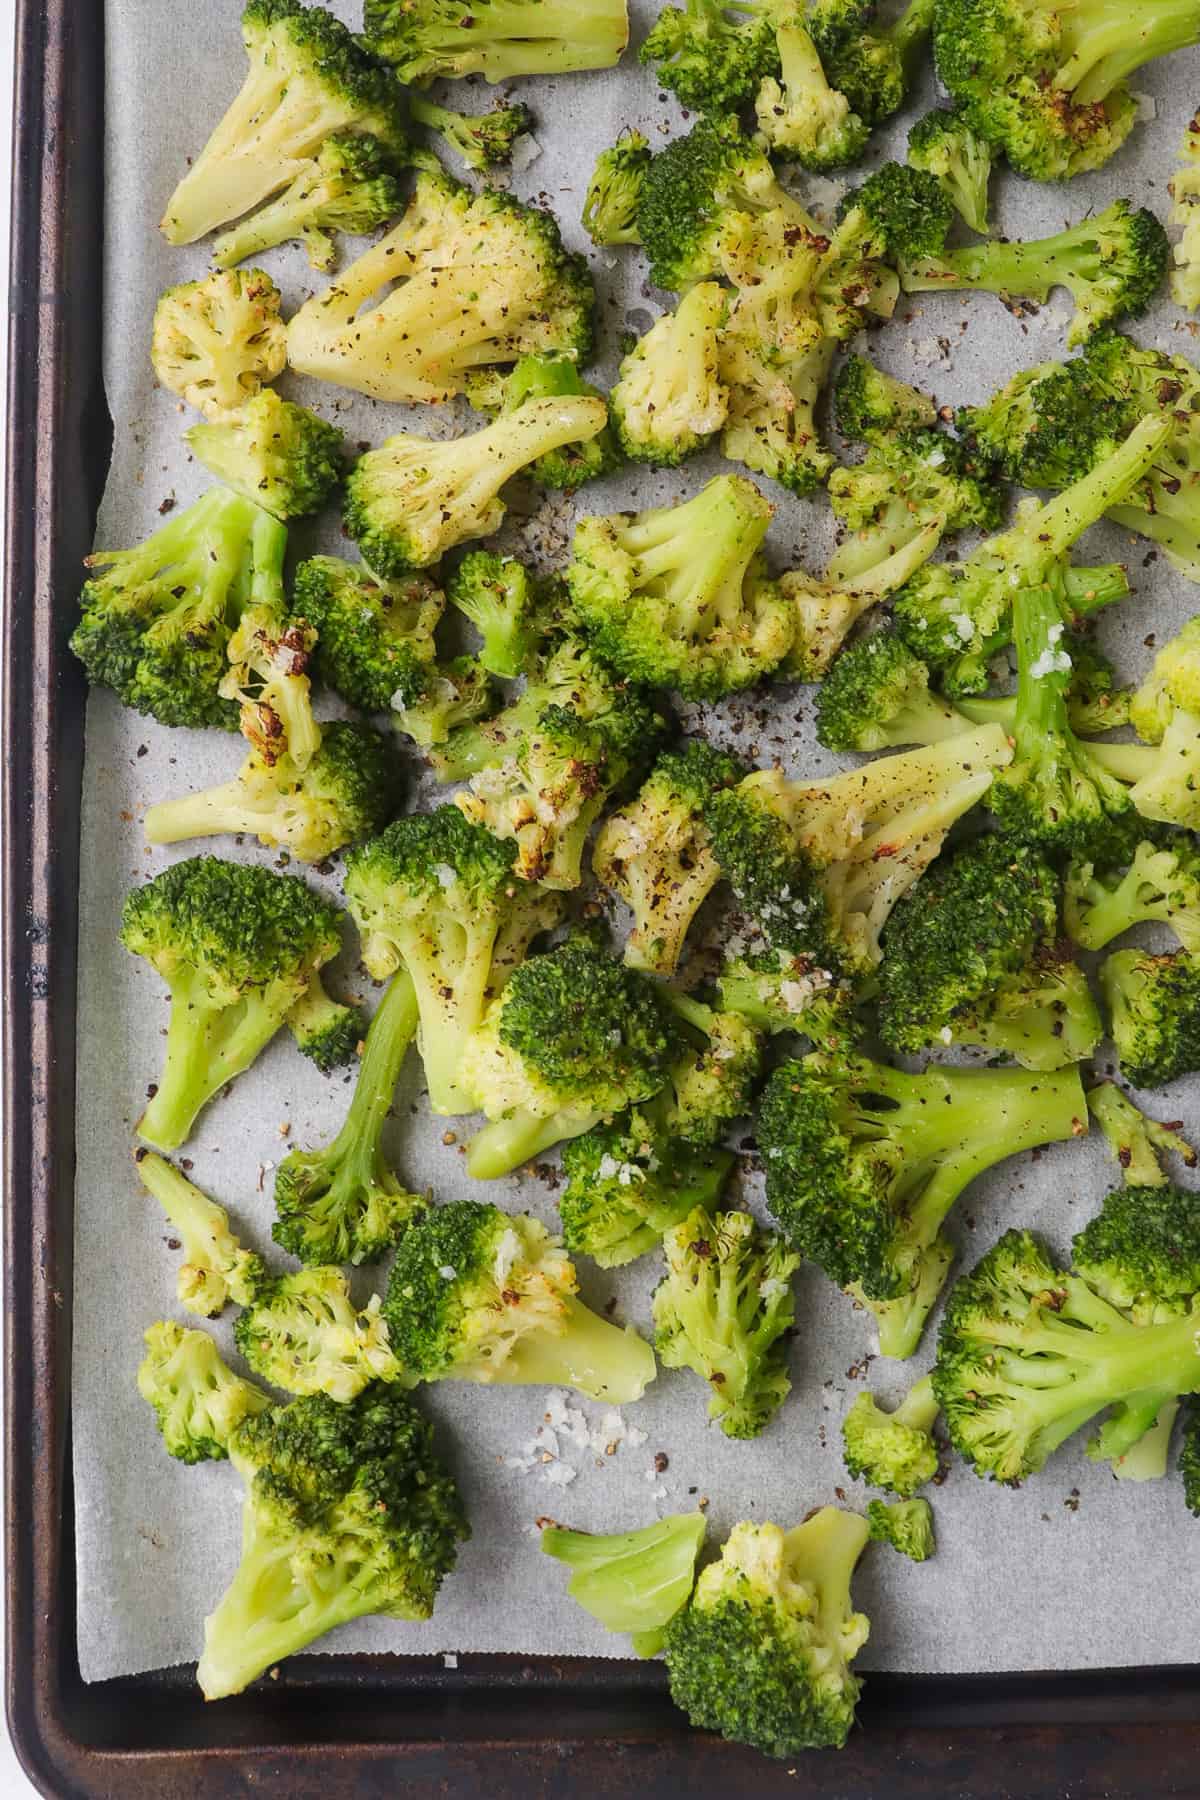 Roasted broccoli florets on baking sheet.